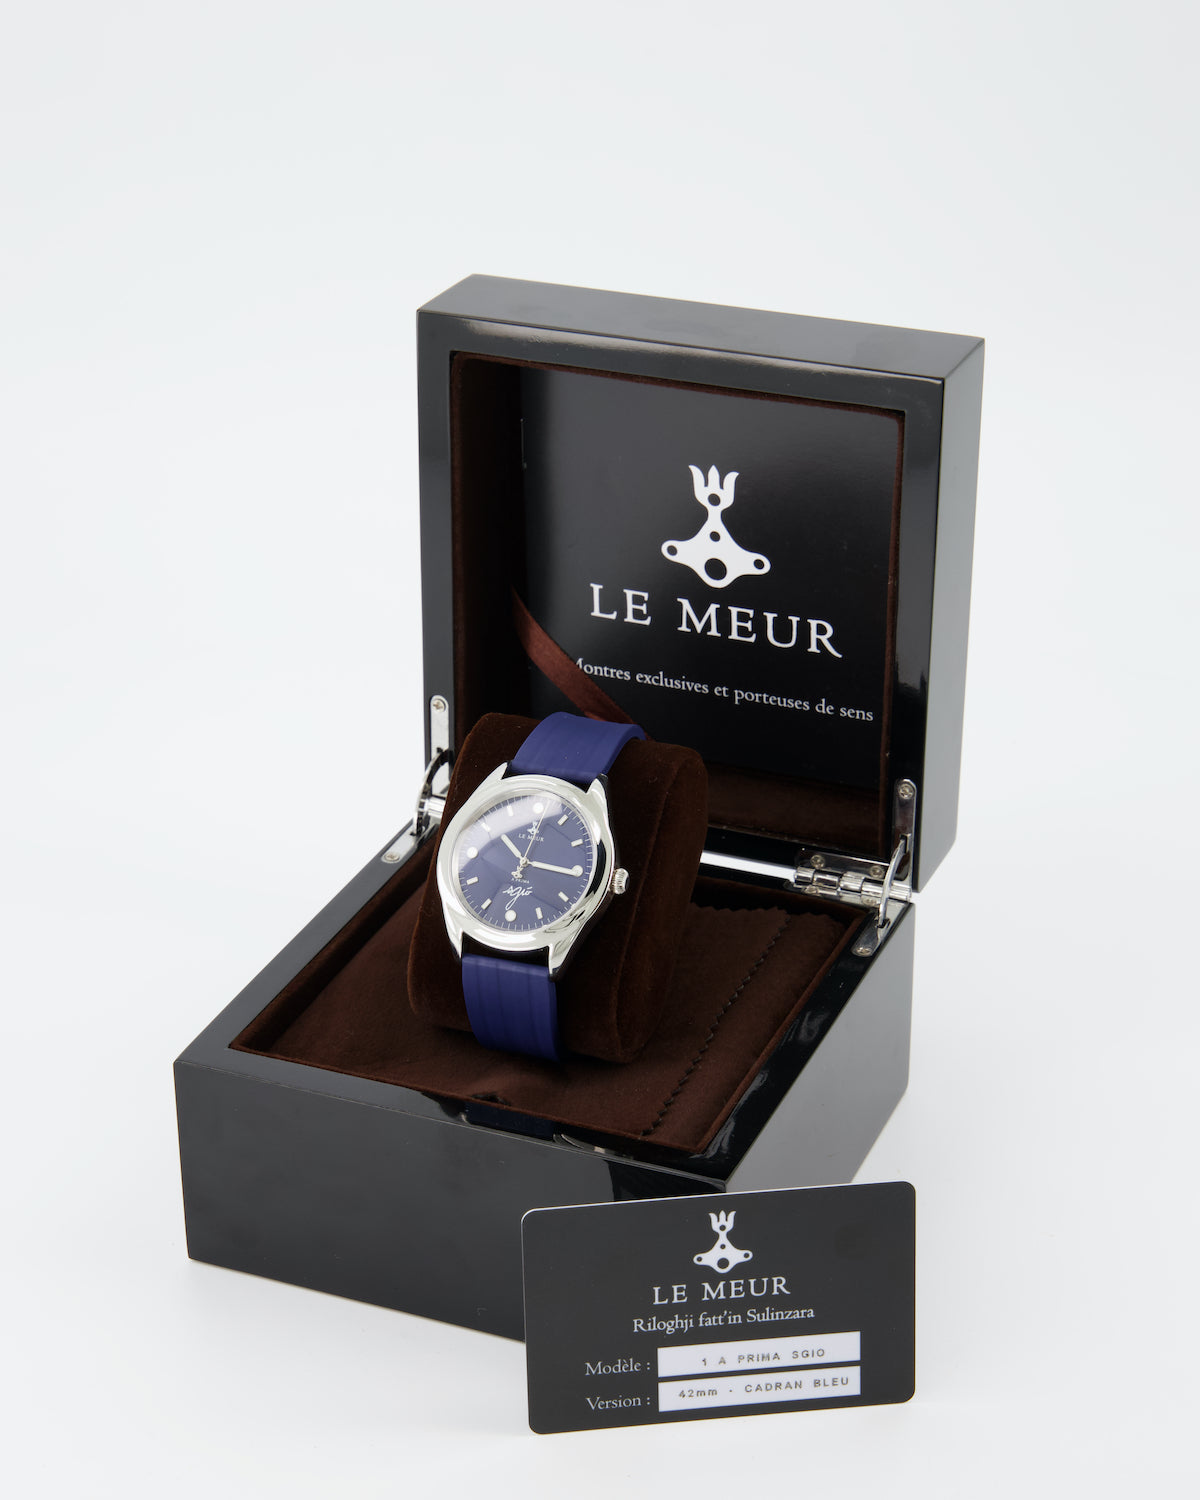 La montre 42m Made in Corsica édition limitée disponible sur commande.